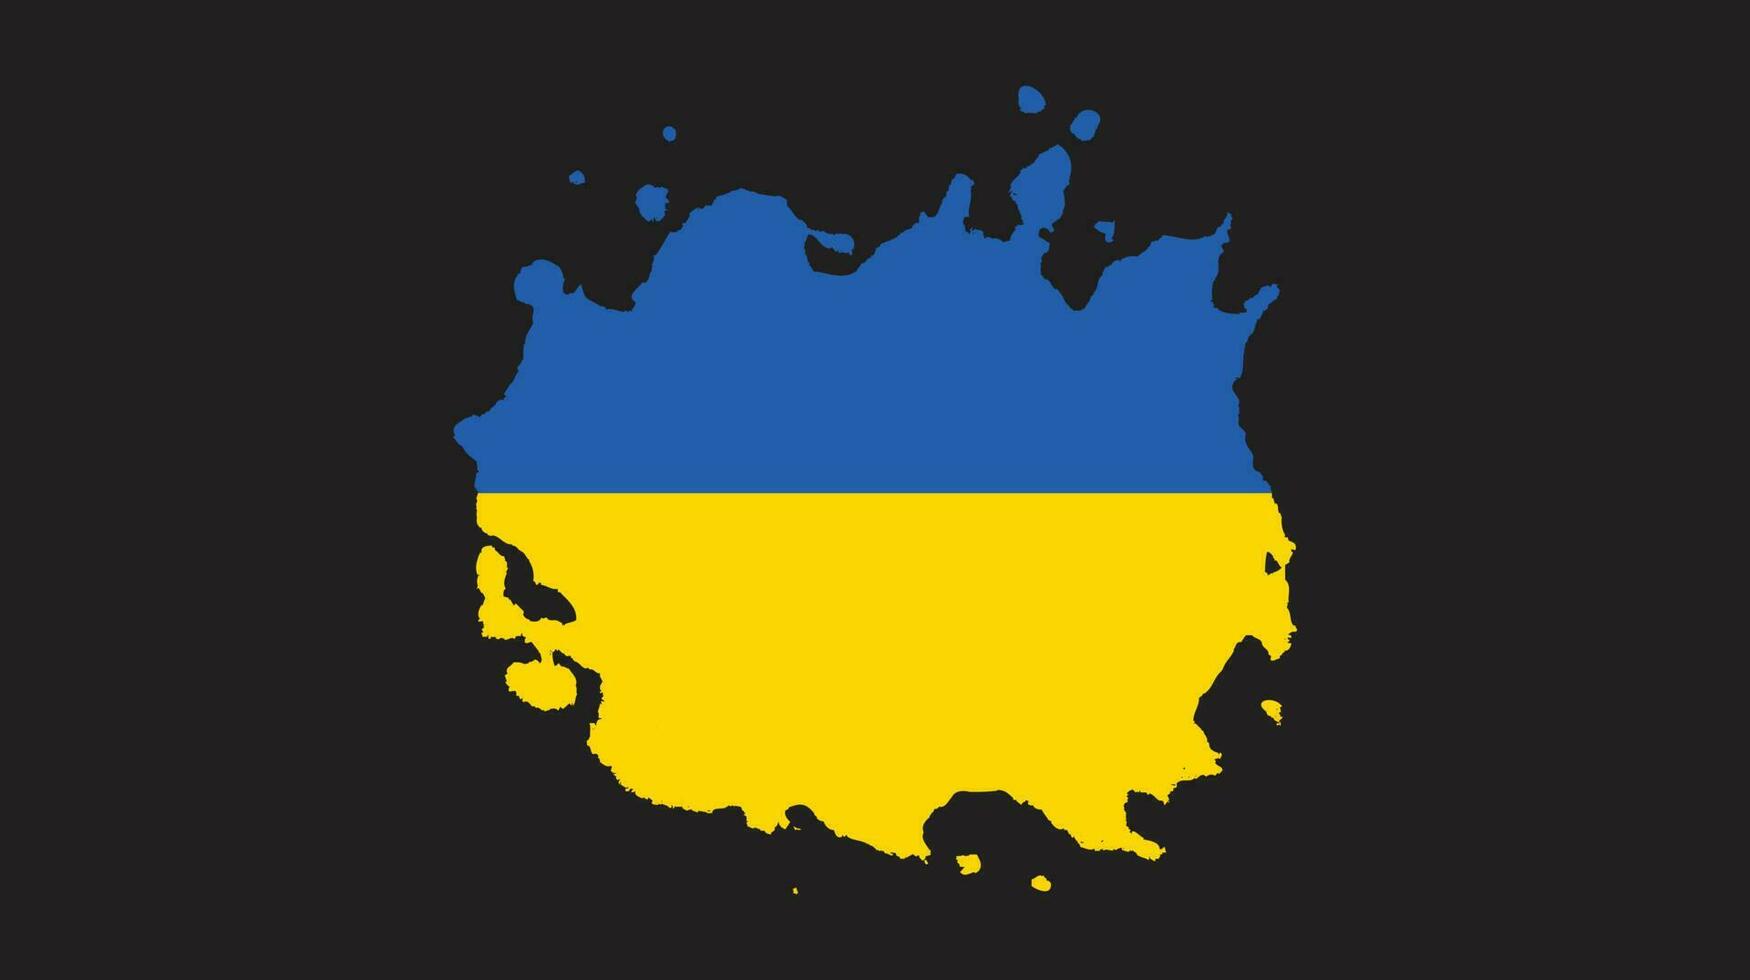 Grunge brush stroke Ukraine flag vector